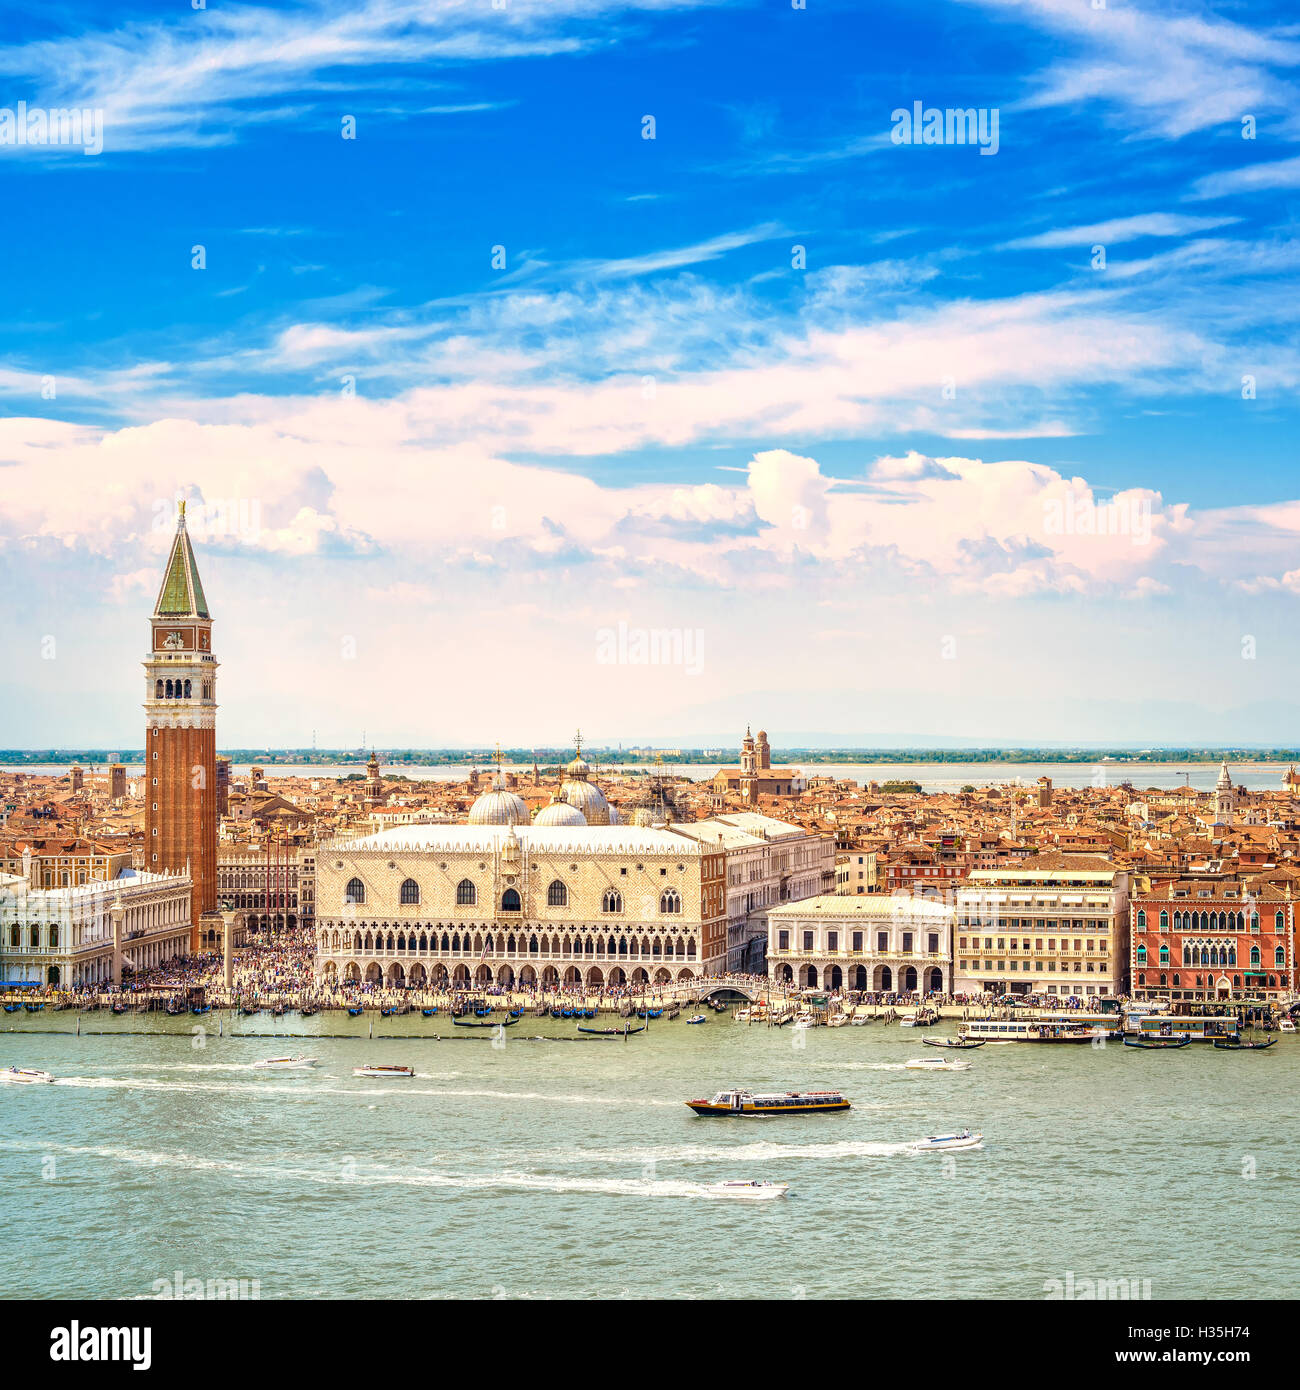 Venezia landmark, vista aerea di Piazza San Marco o San Marco, il campanile e la Ducale o Palazzo Ducale. L'Italia, l'Europa. Foto Stock